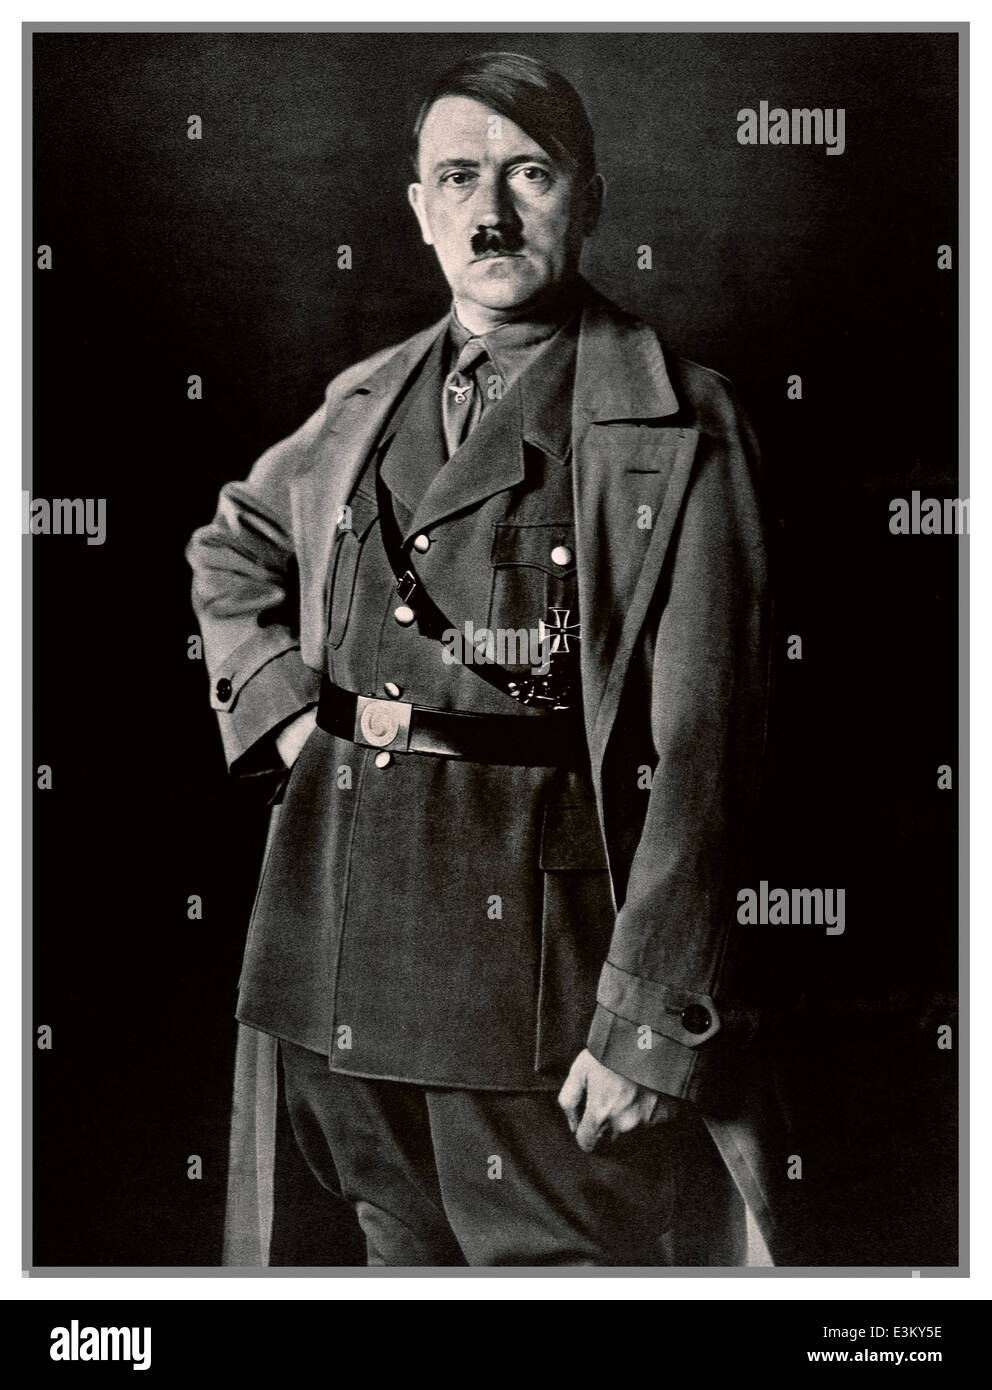 RITRATTO DI ADOLF HITLER 1930 studio B&W ha posto ritratto fotografia di Adolf Hitler in uniforme dal fotografo personale di Heinrich Hoffman Hitler Foto Stock